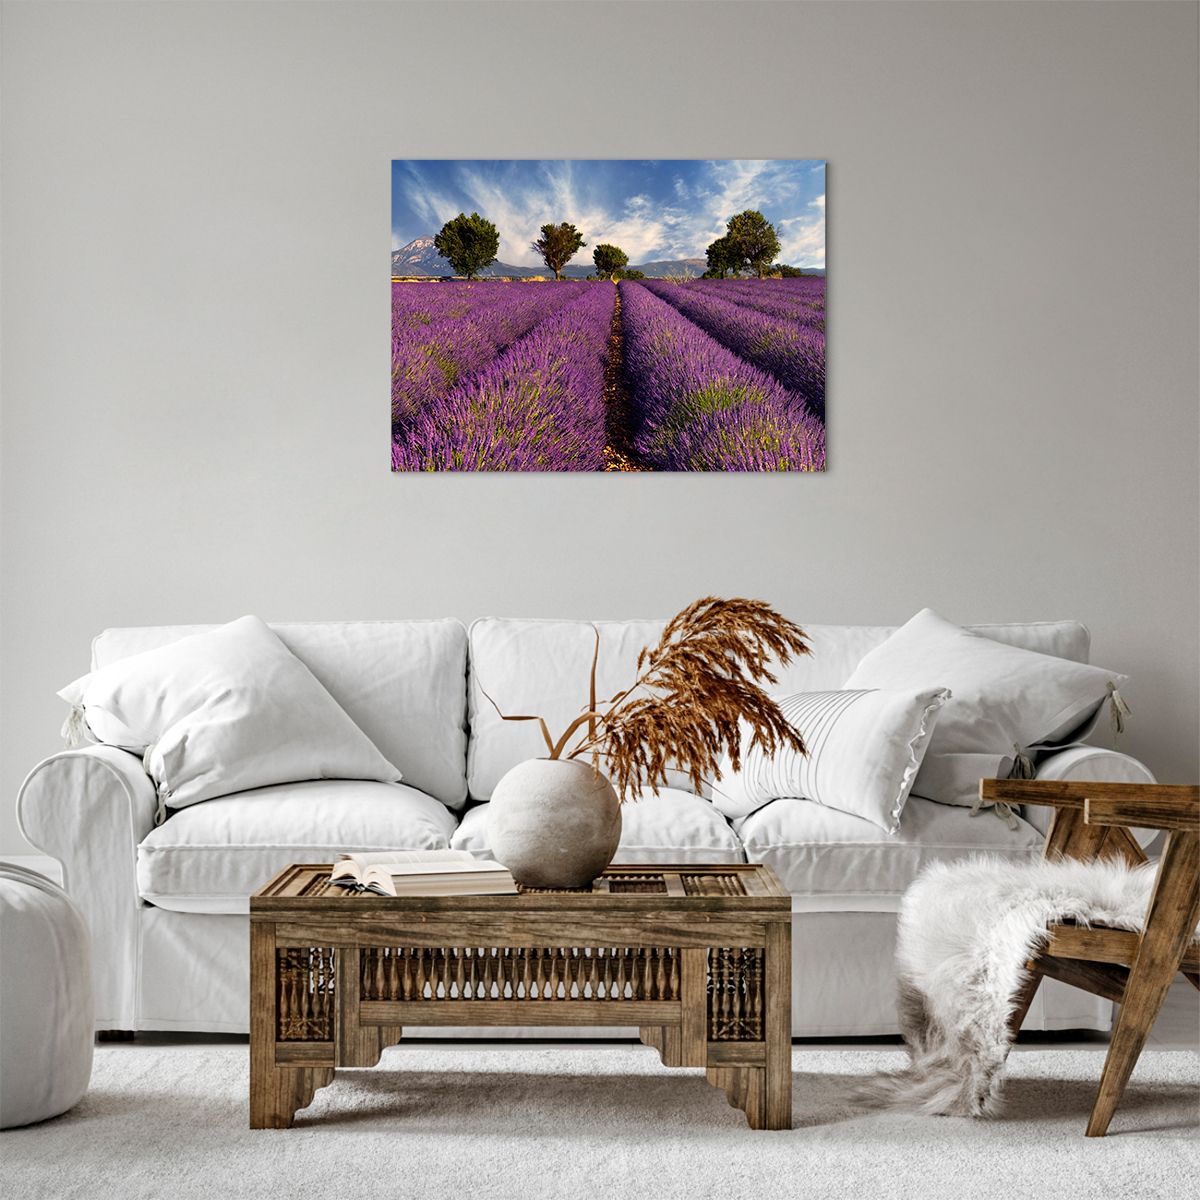 Bild auf Leinwand Landschaft, Bild auf Leinwand Natur, Bild auf Leinwand Lavendel, Bild auf Leinwand Frankreich, Bild auf Leinwand Landschaft